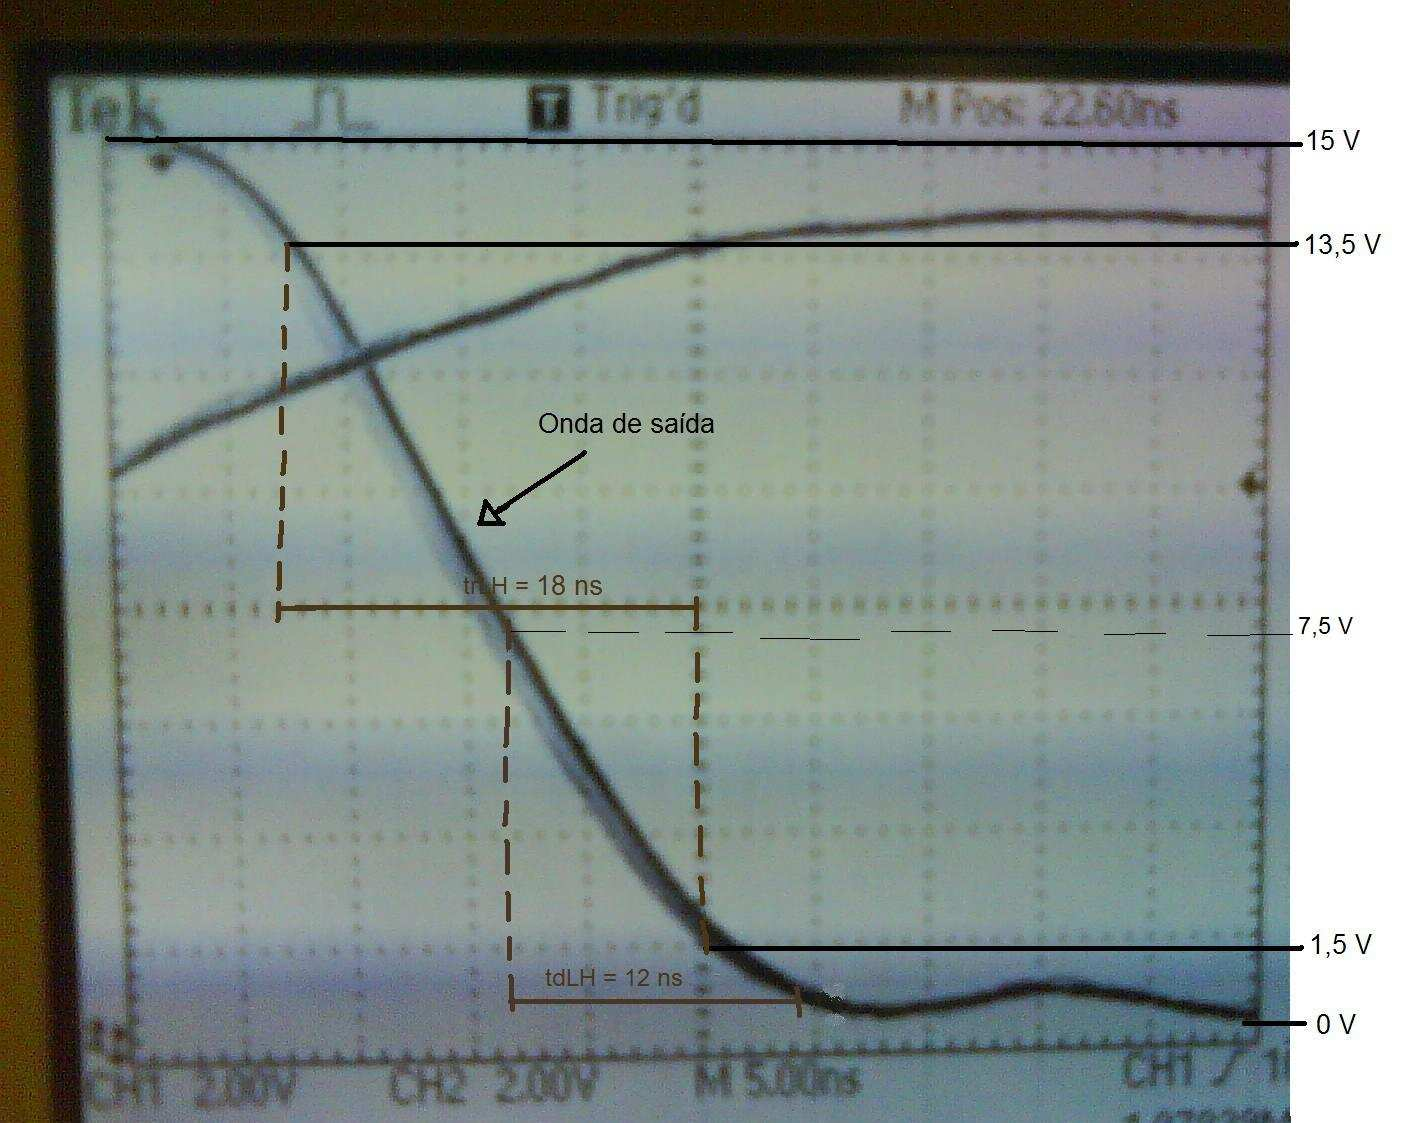 Gráfico 2 Sinal de saída do circuito com t rhl = 18ns e t dhl = 12ns Tabela de tempos Através dos gráficos de saída do circuito utilizado, podemos observar os tempos de propagação de subida (tdlh) e